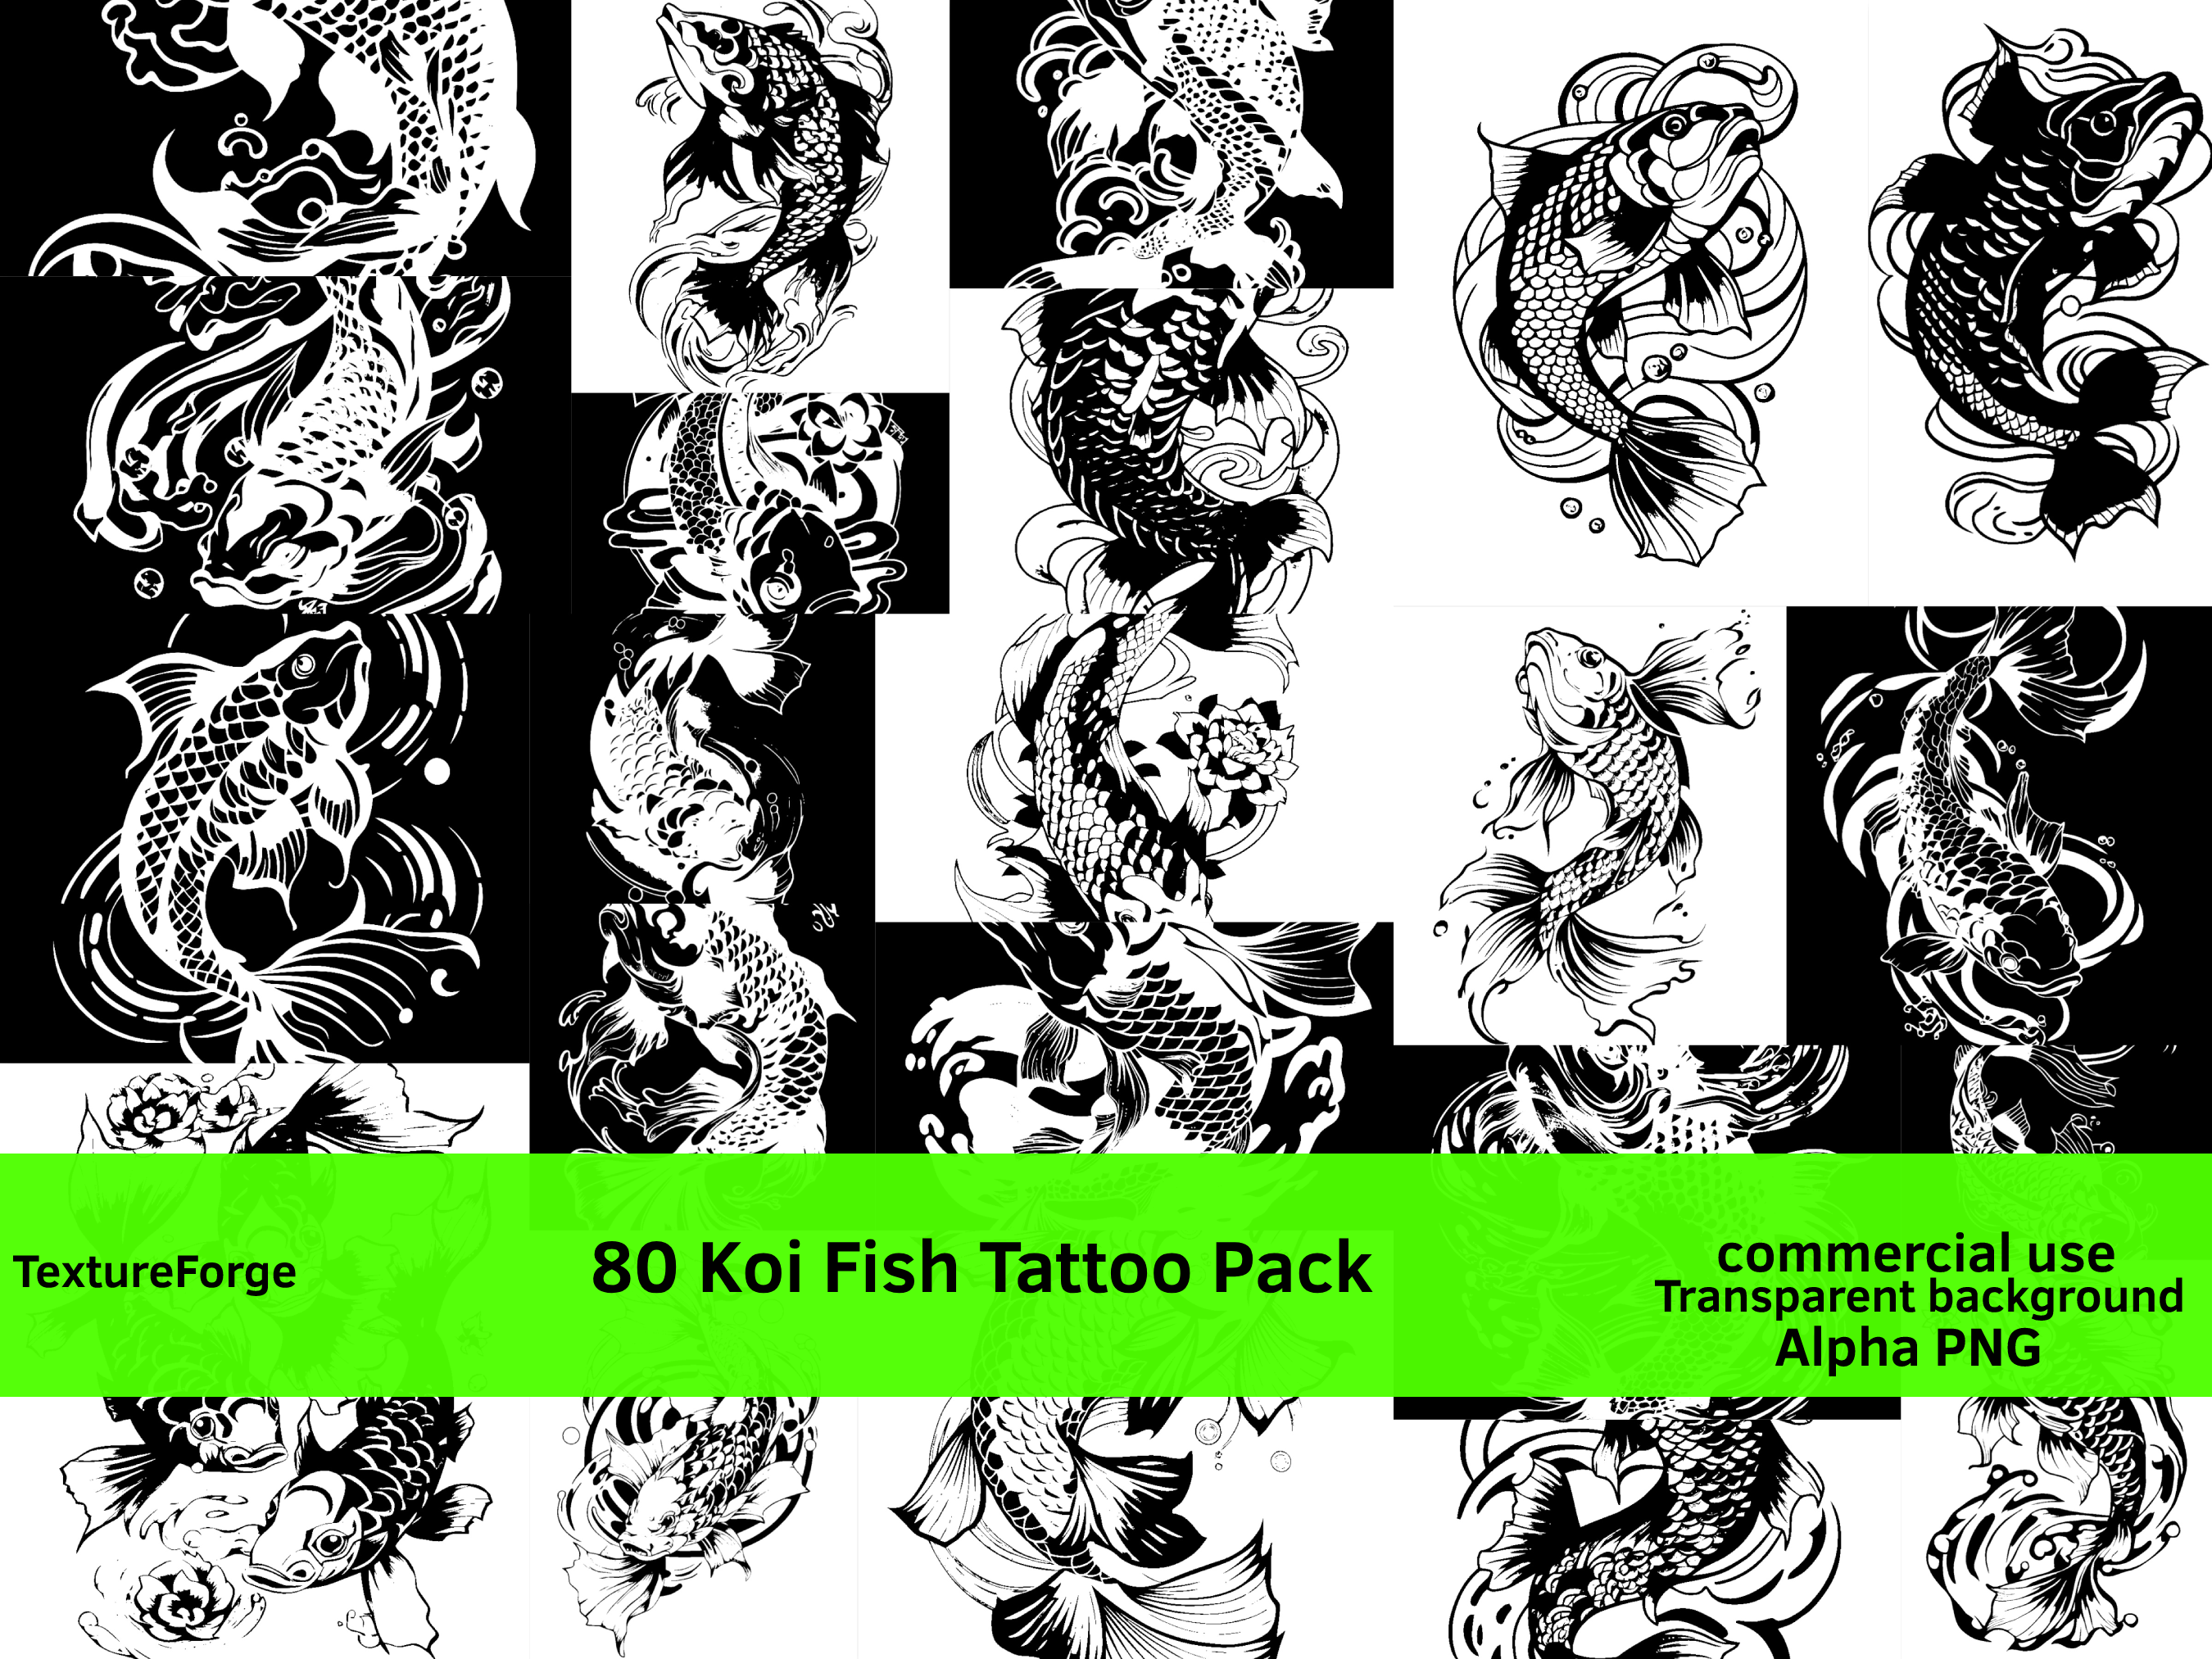 green koi fish tattoo designs